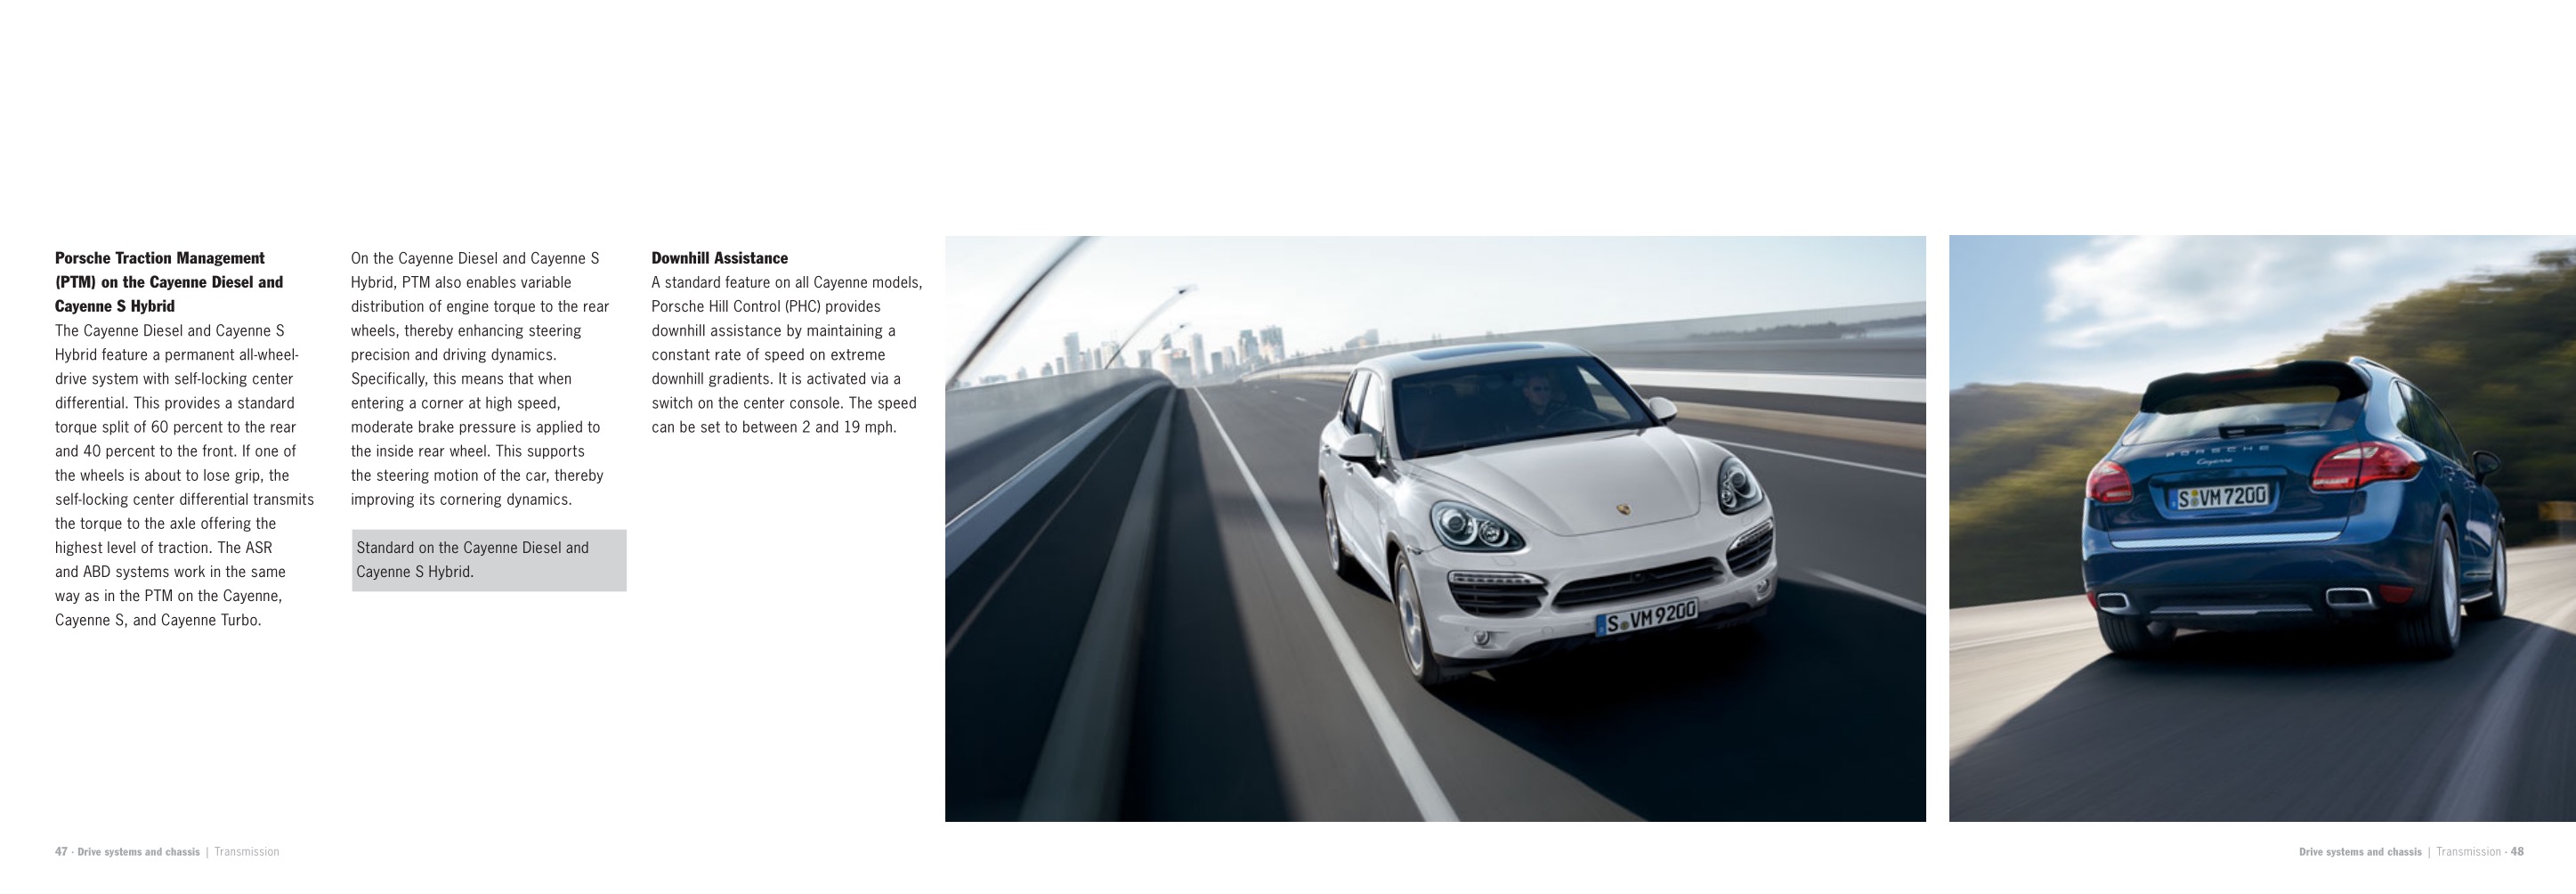 2013 Porsche Cayenne Brochure Page 7